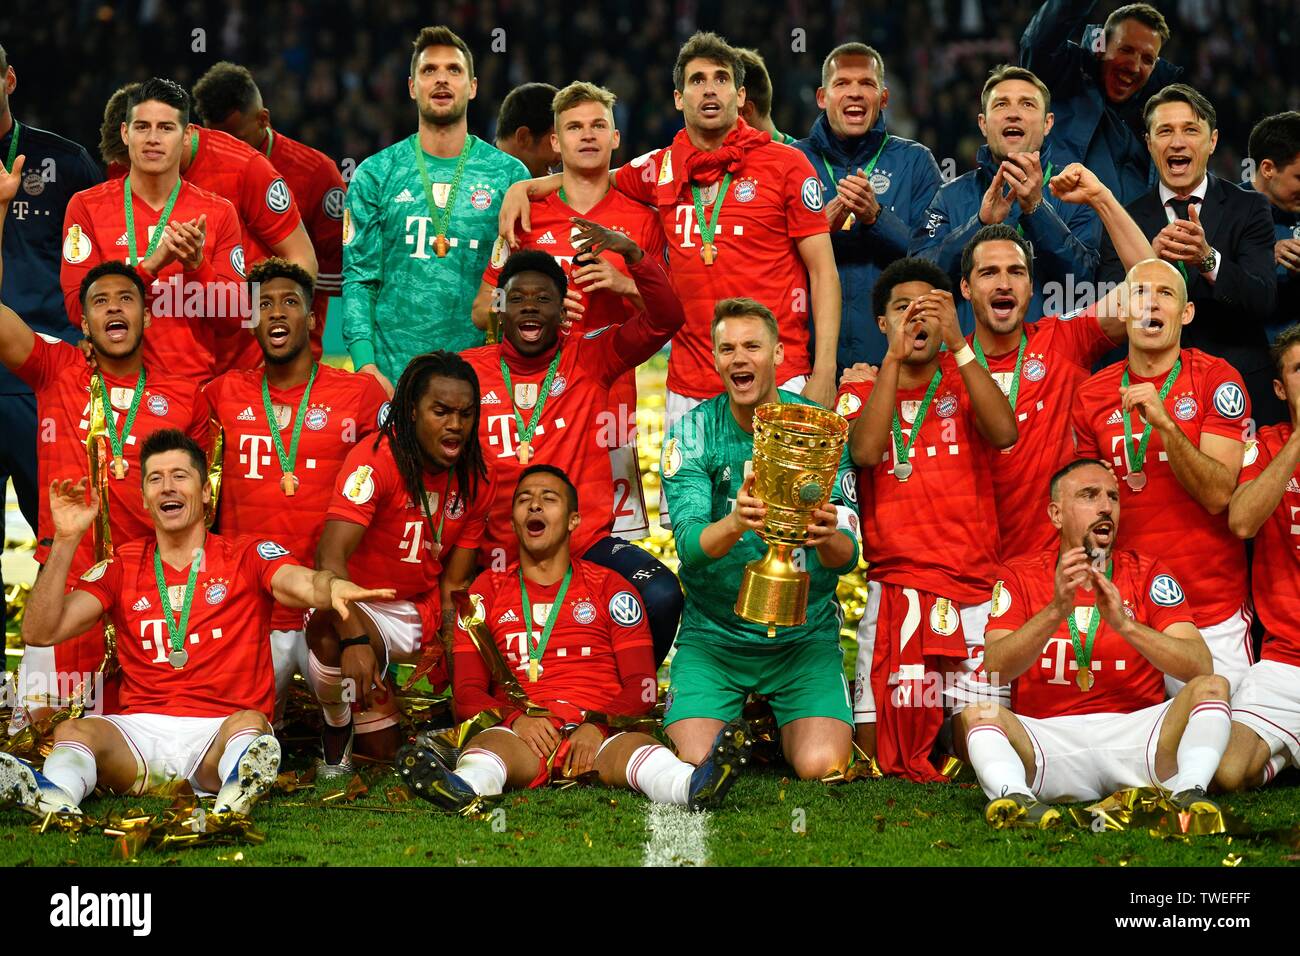 Photo de groupe FC Bayern remporte le DFB, 76e finale de la Coupe DFB RB Leipzig, RBL, contre le FC Bayern Munich, FCB, stadion Olympique Berlin, Allemagne Banque D'Images